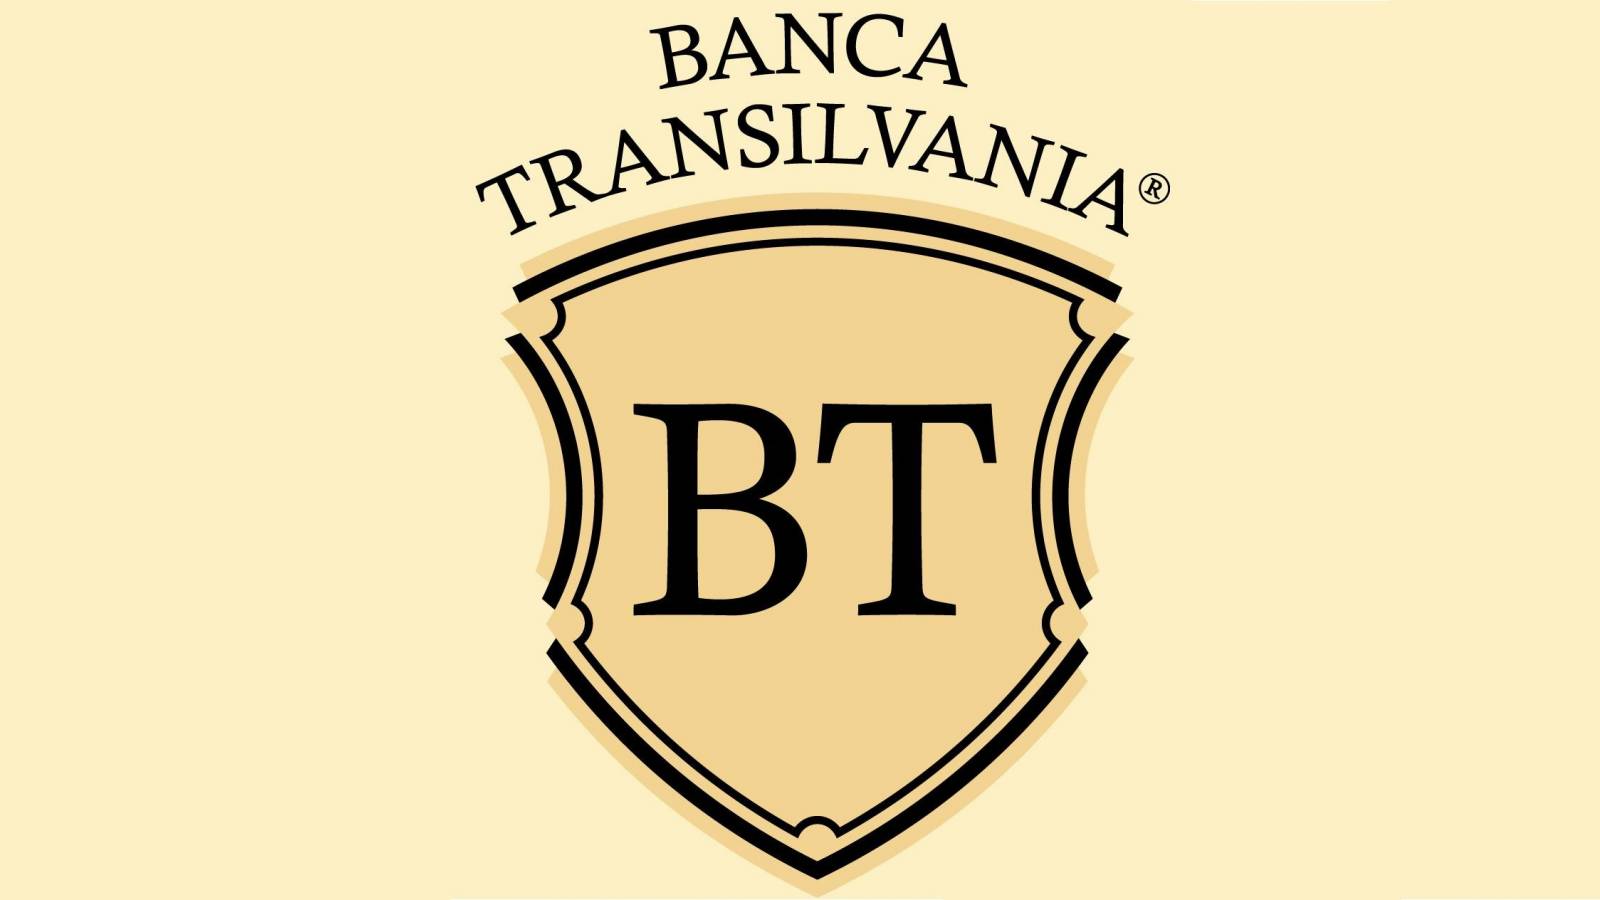 BANCA Transilvania informuje WSZYSTKICH rumuńskich klientów BEZPŁATNIE